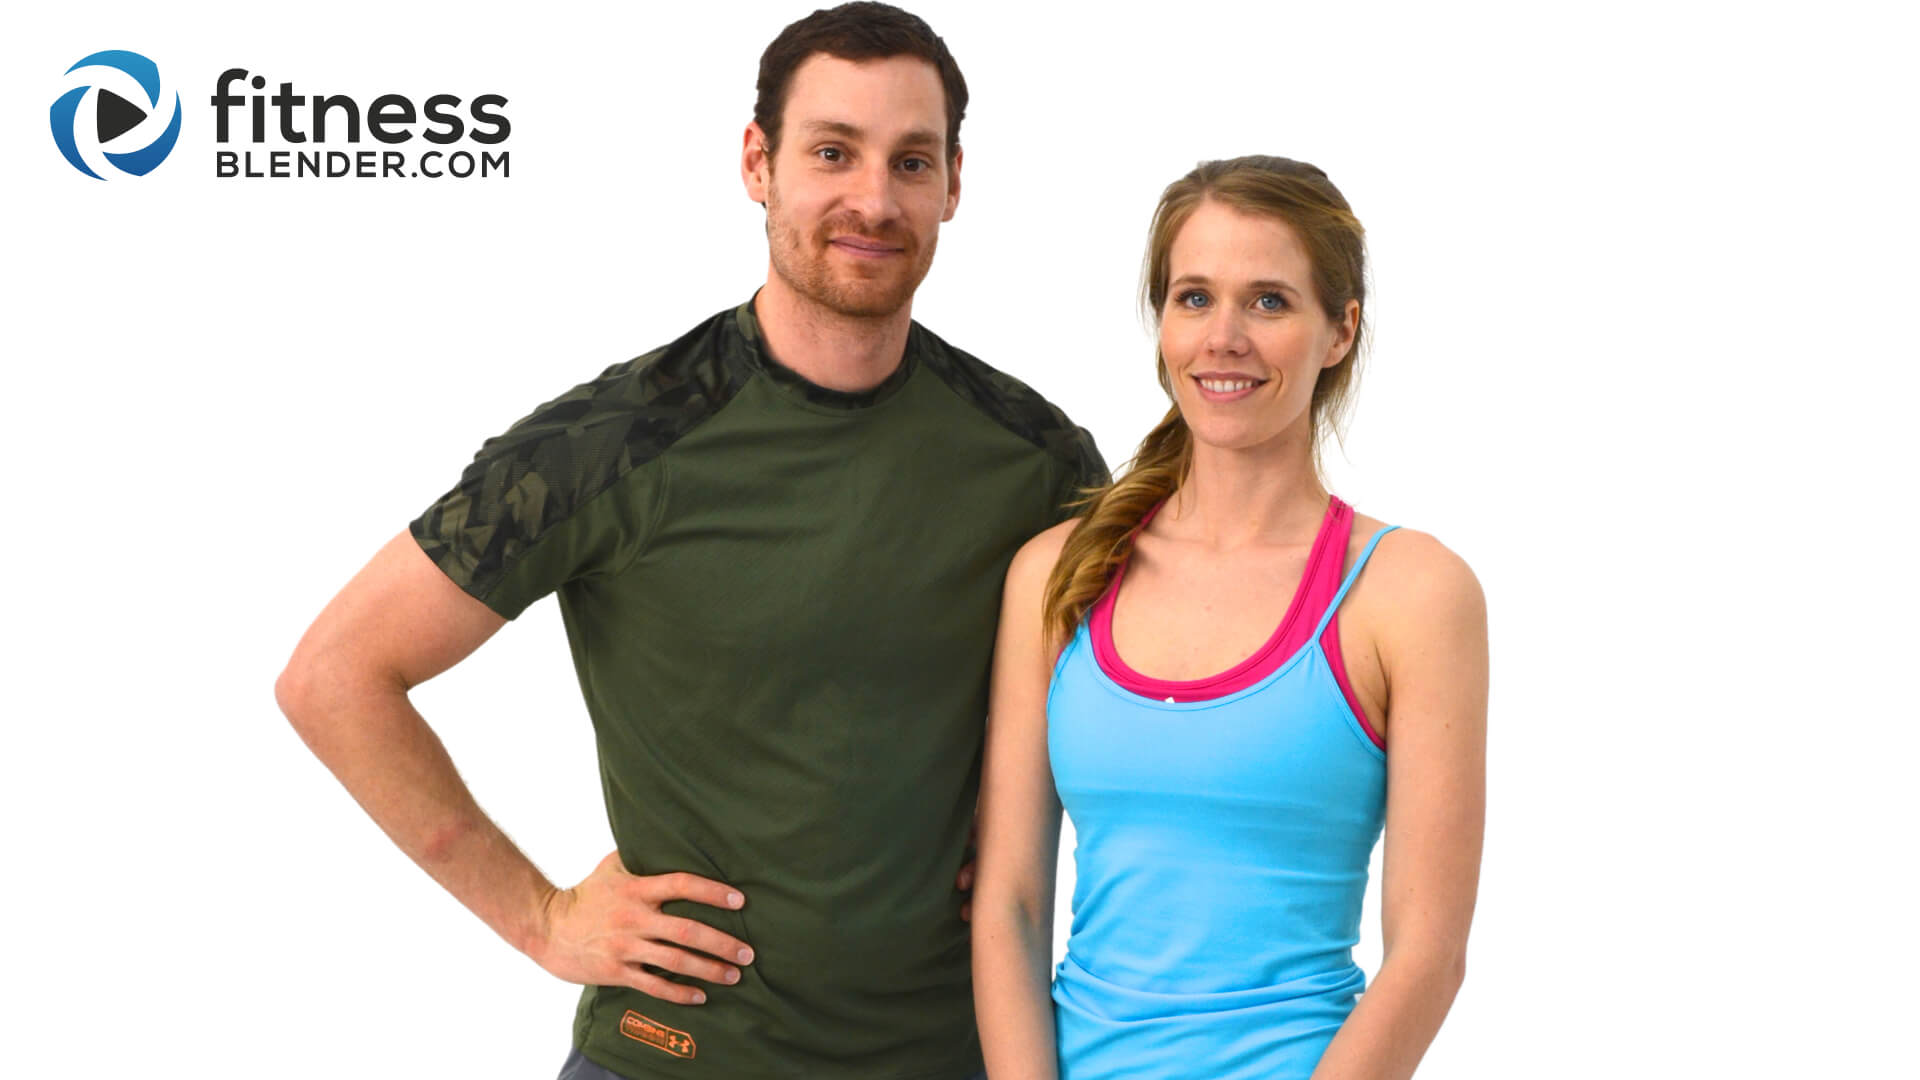 Potret kedua pengusung FitnessBlender dengan atribut olahraga di depan background putih